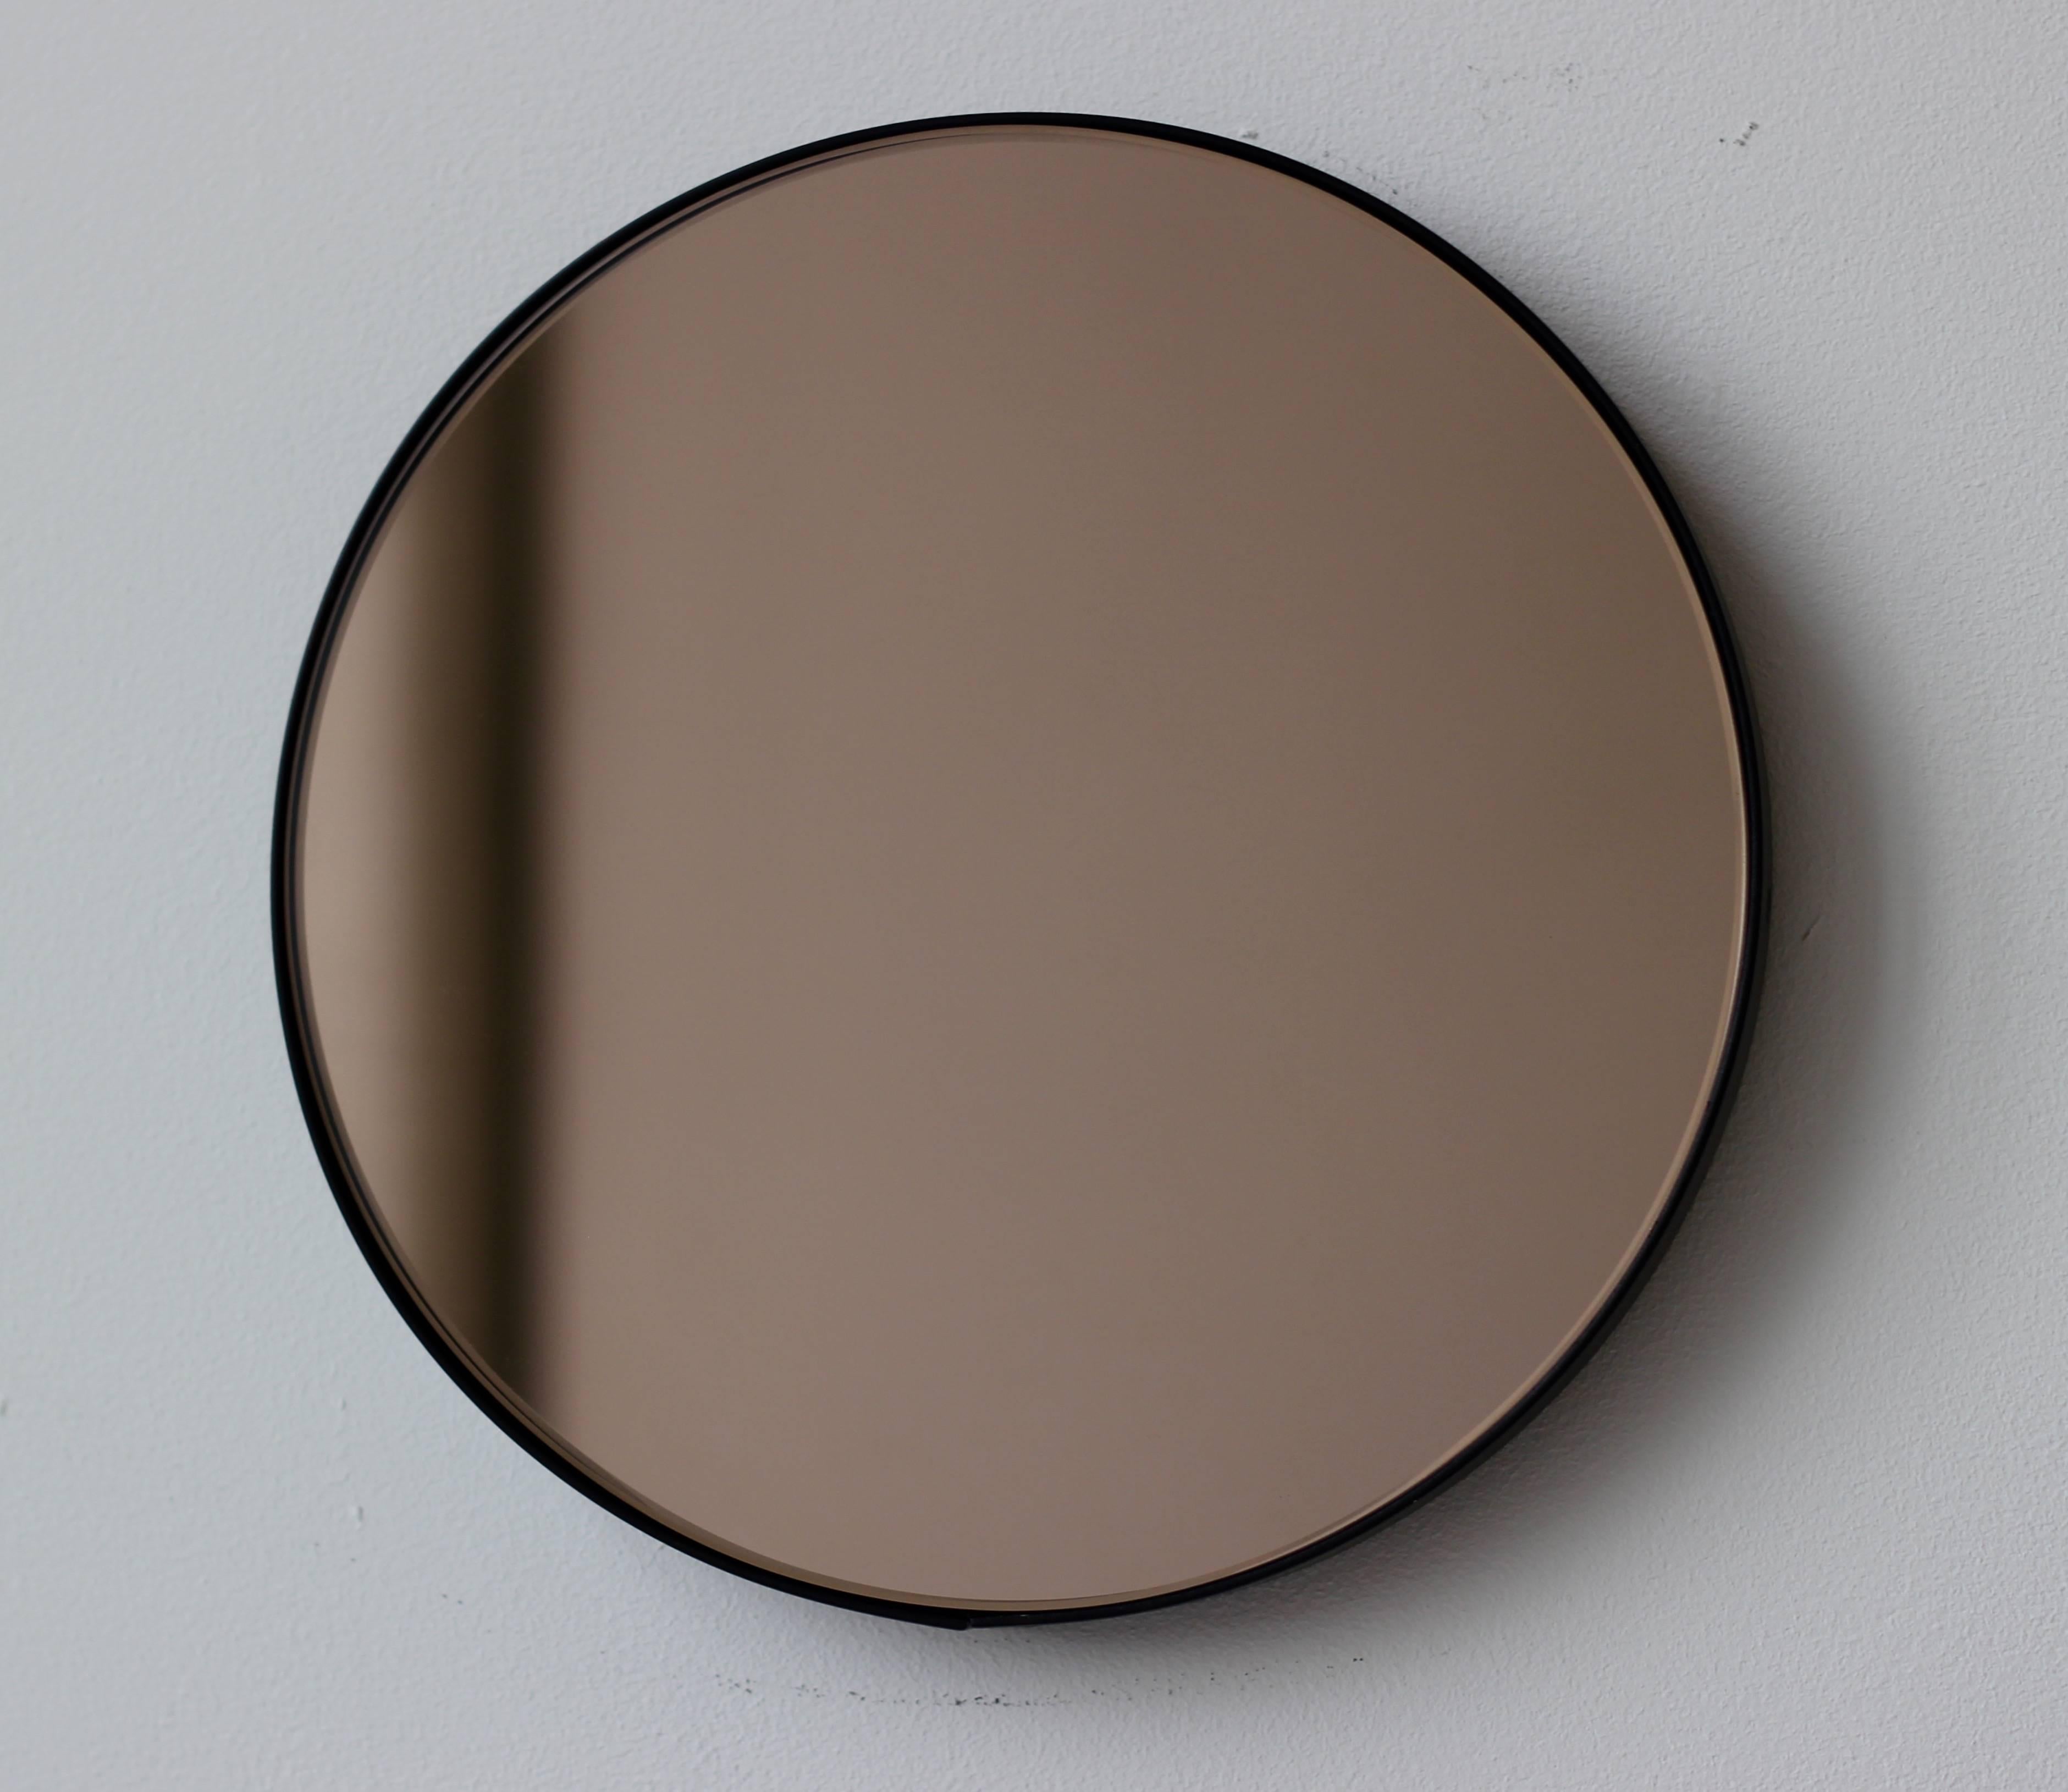 Zeitgenössischer Orbis™ runder, bronzefarben getönter Spiegel mit einem minimalistischen, schwarz pulverbeschichteten Aluminiumrahmen. Entworfen und handgefertigt in London, UK.

Die mittelgroßen, großen und extragroßen Spiegel (60, 80 und 100 cm)